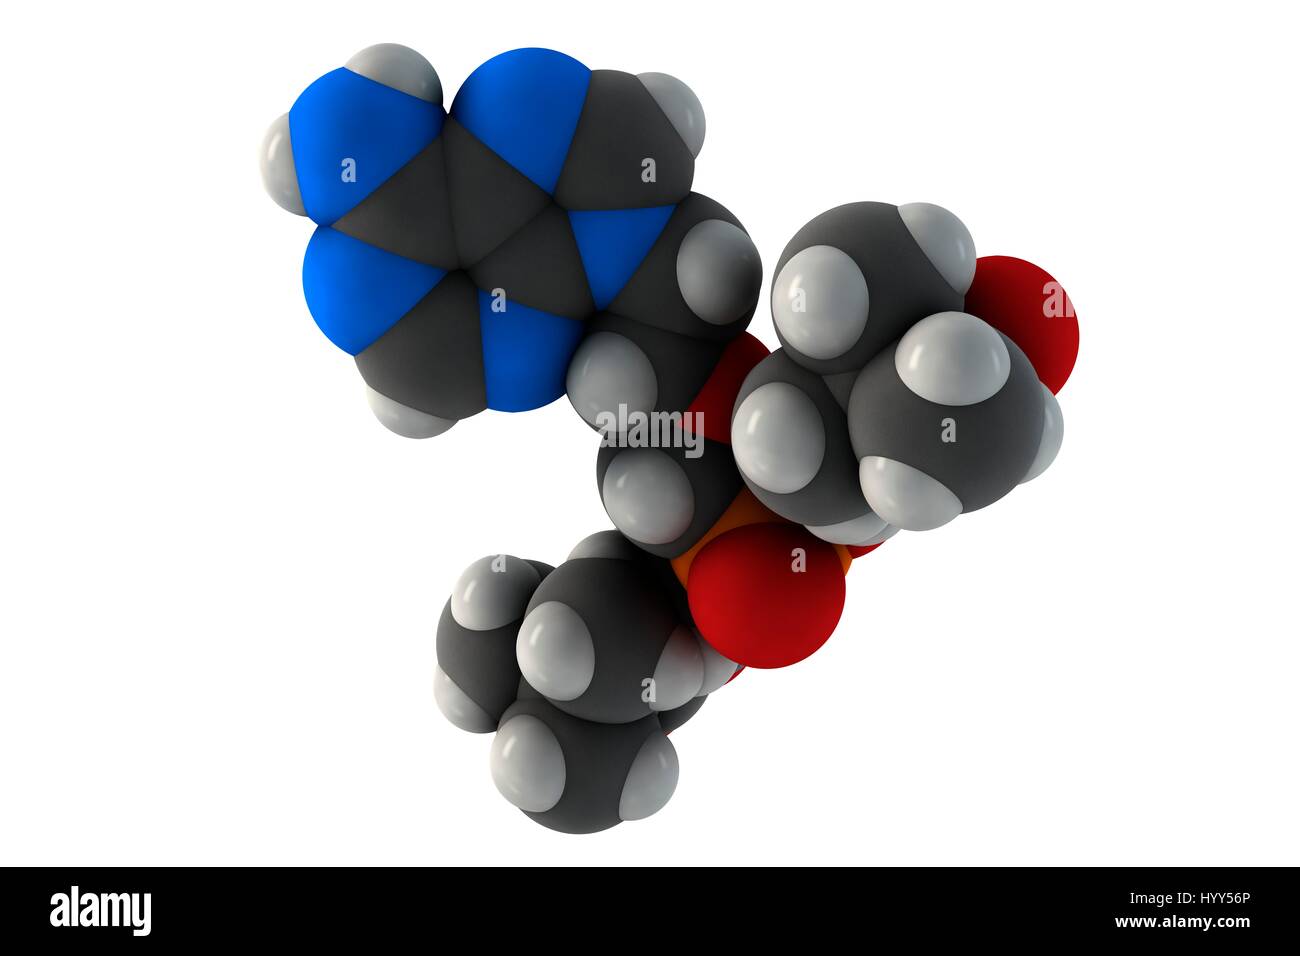 El adefovir hepatitis B y el virus del herpes simple (VHS) molécula de drogas. Fórmula química es C20H32N5O8P. Los átomos son representados como esferas: carbono (gris), hidrógeno (blanco), nitrógeno (azul), el oxígeno (rojo), Fósforo (naranja). Ilustración. Foto de stock